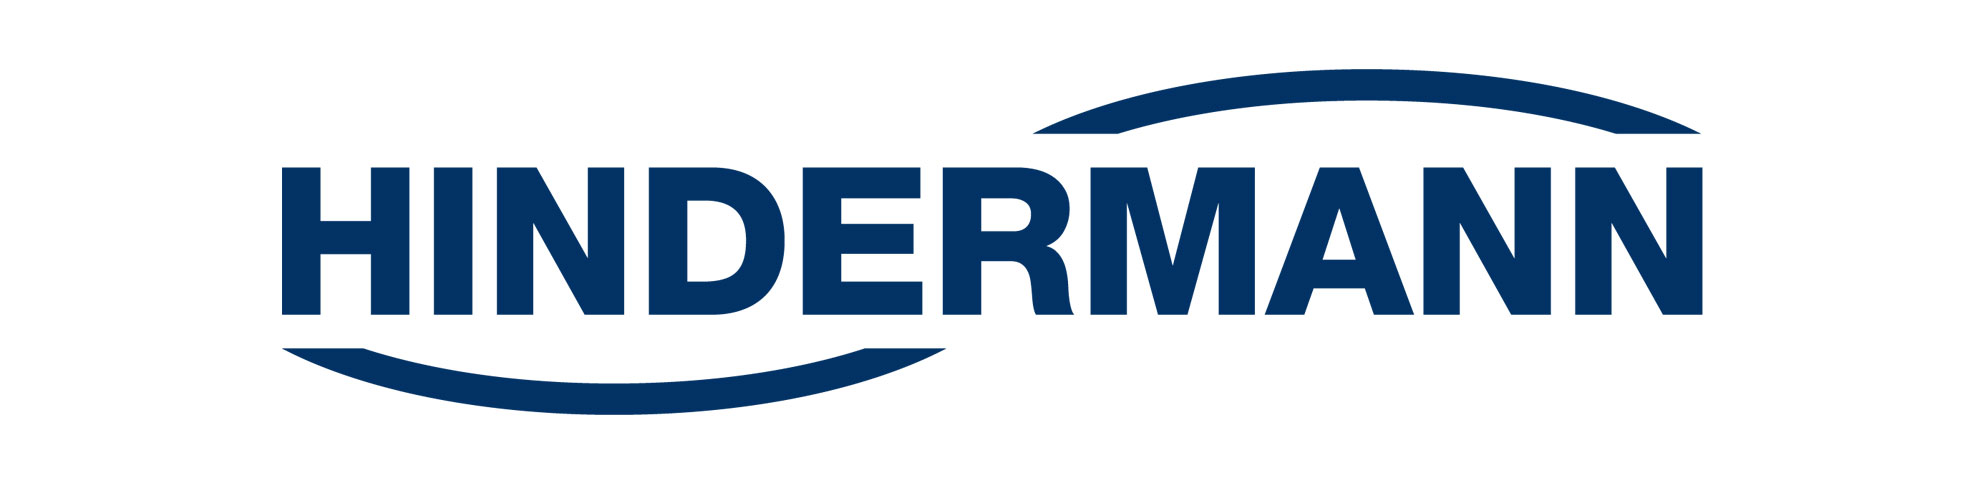 Hindermann – ein Markenprodukt Unser Markenprodukt: Schutzhüllen, deutsche Qualität | HINDERMANN